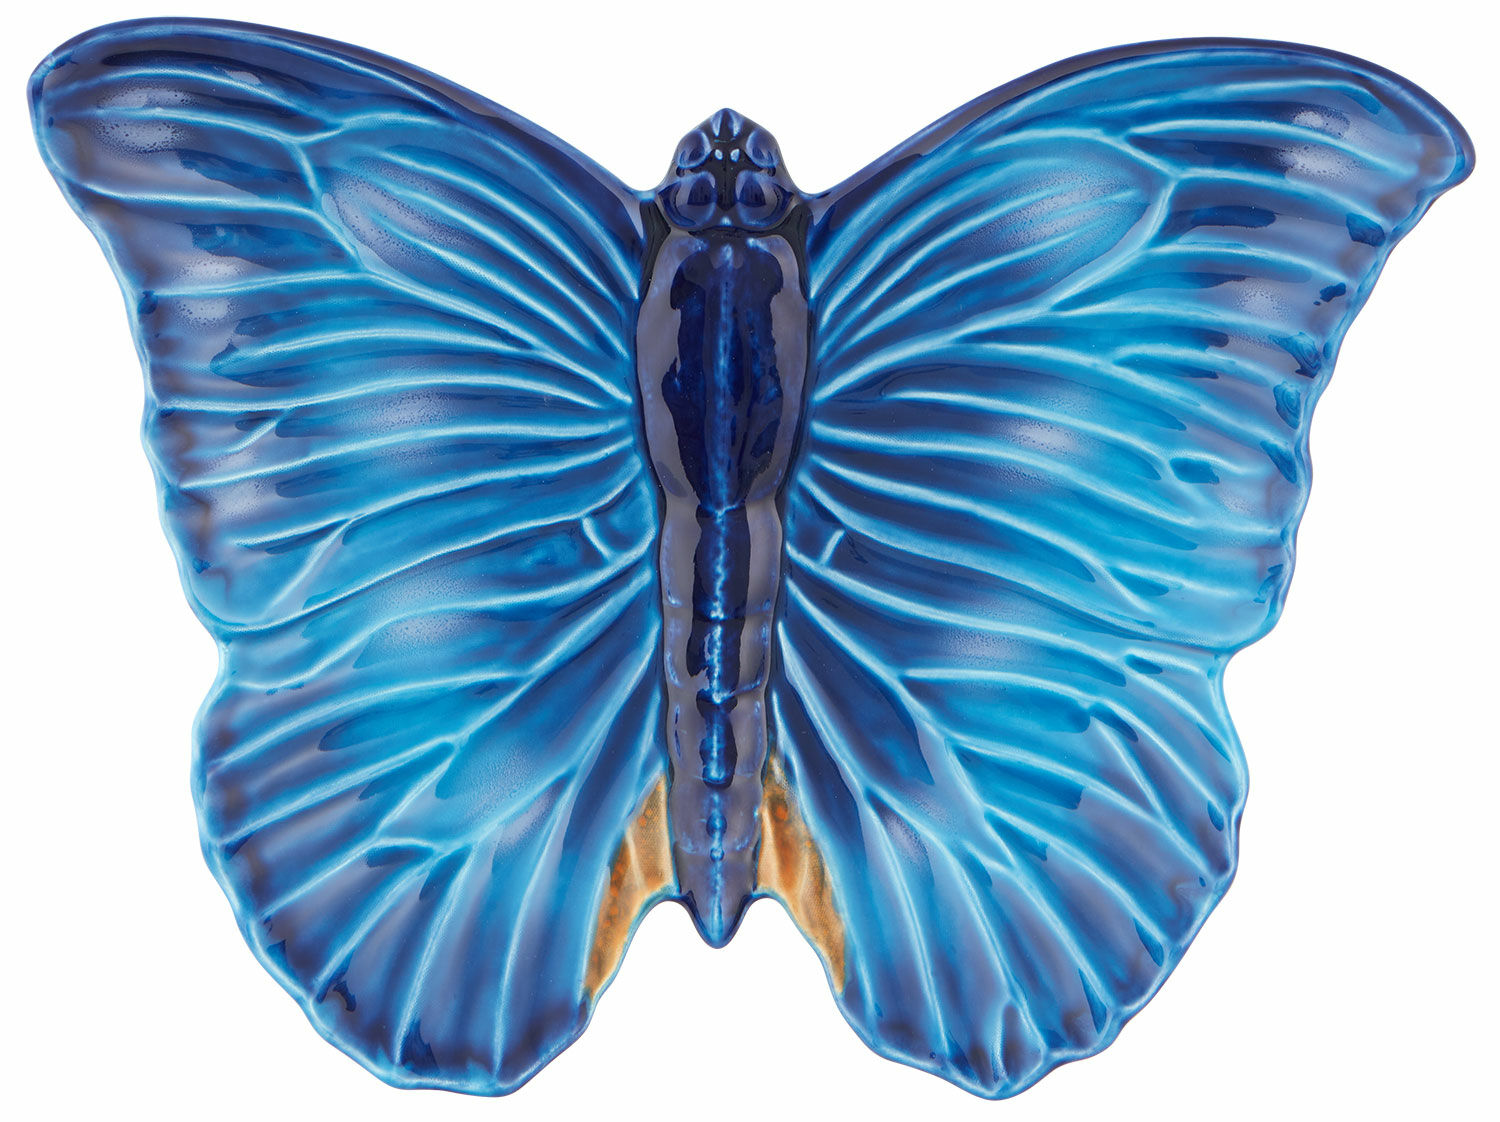 Schale "Cloudy Butterflys" - Design Claudia Schiffer von Vista Alegre